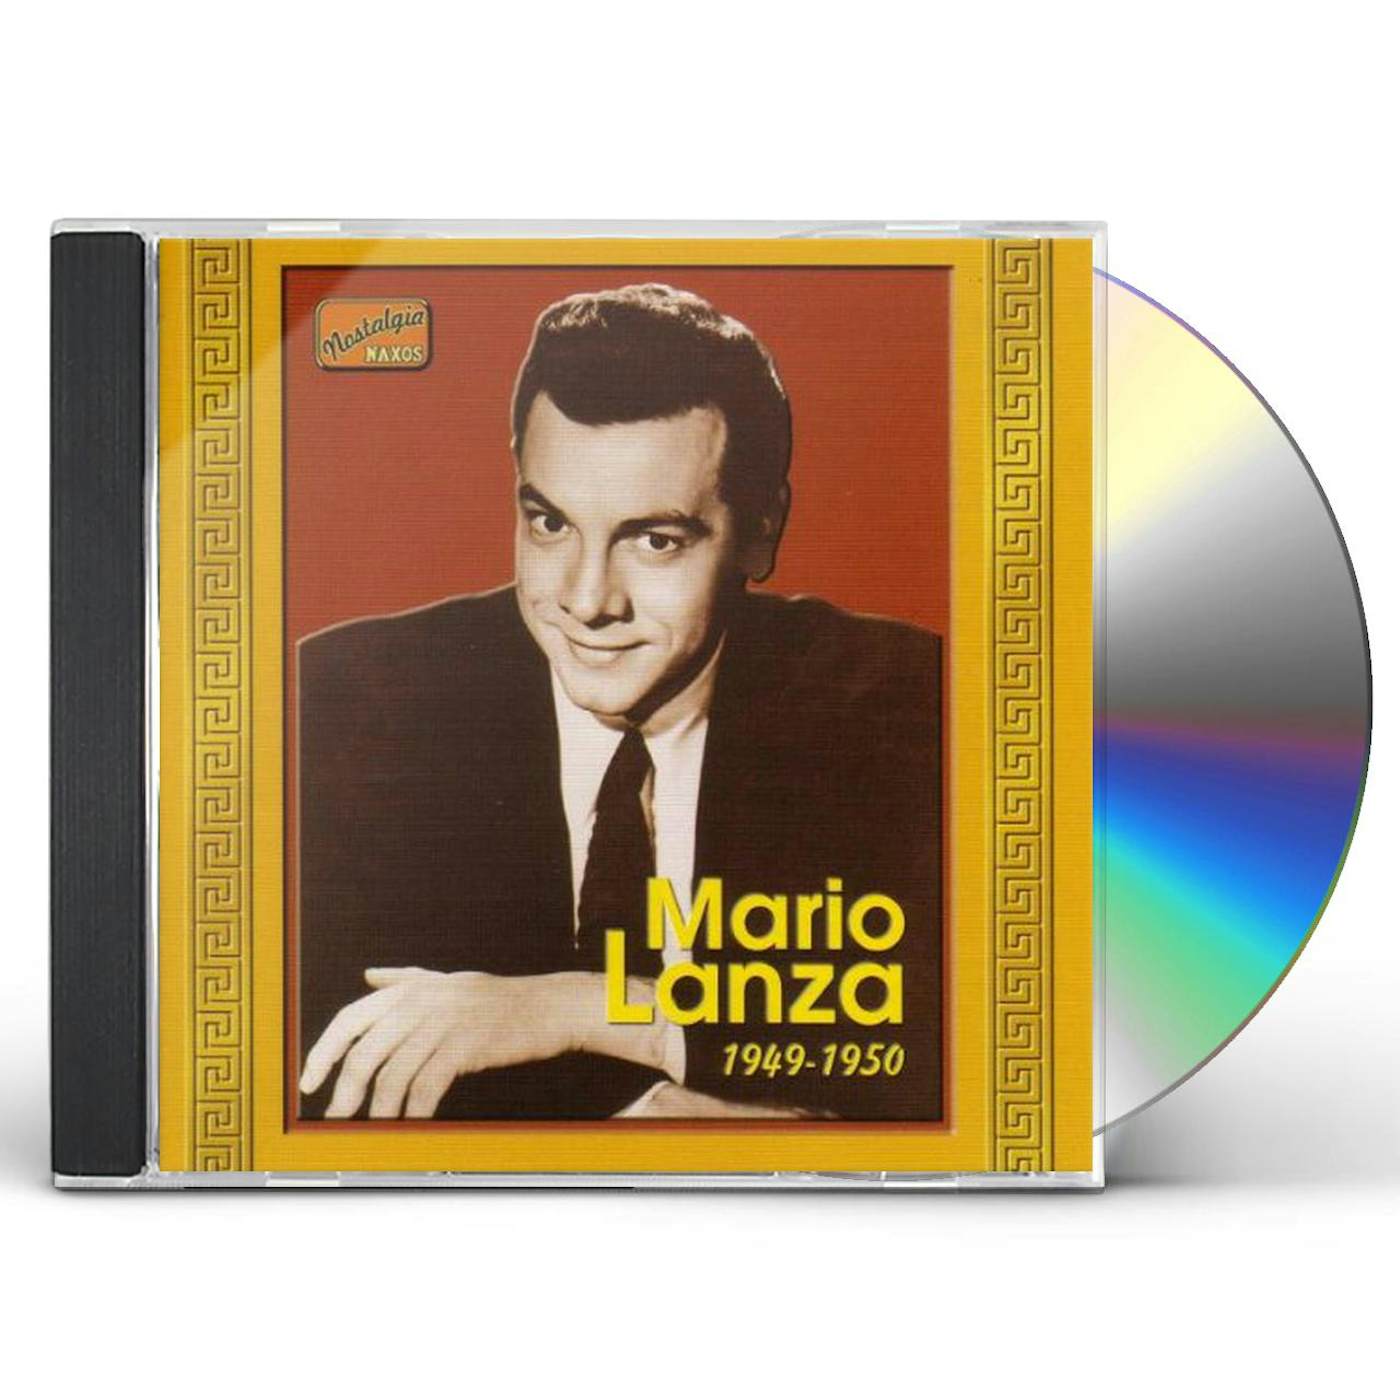 Mario Lanza 1919-1950 CD